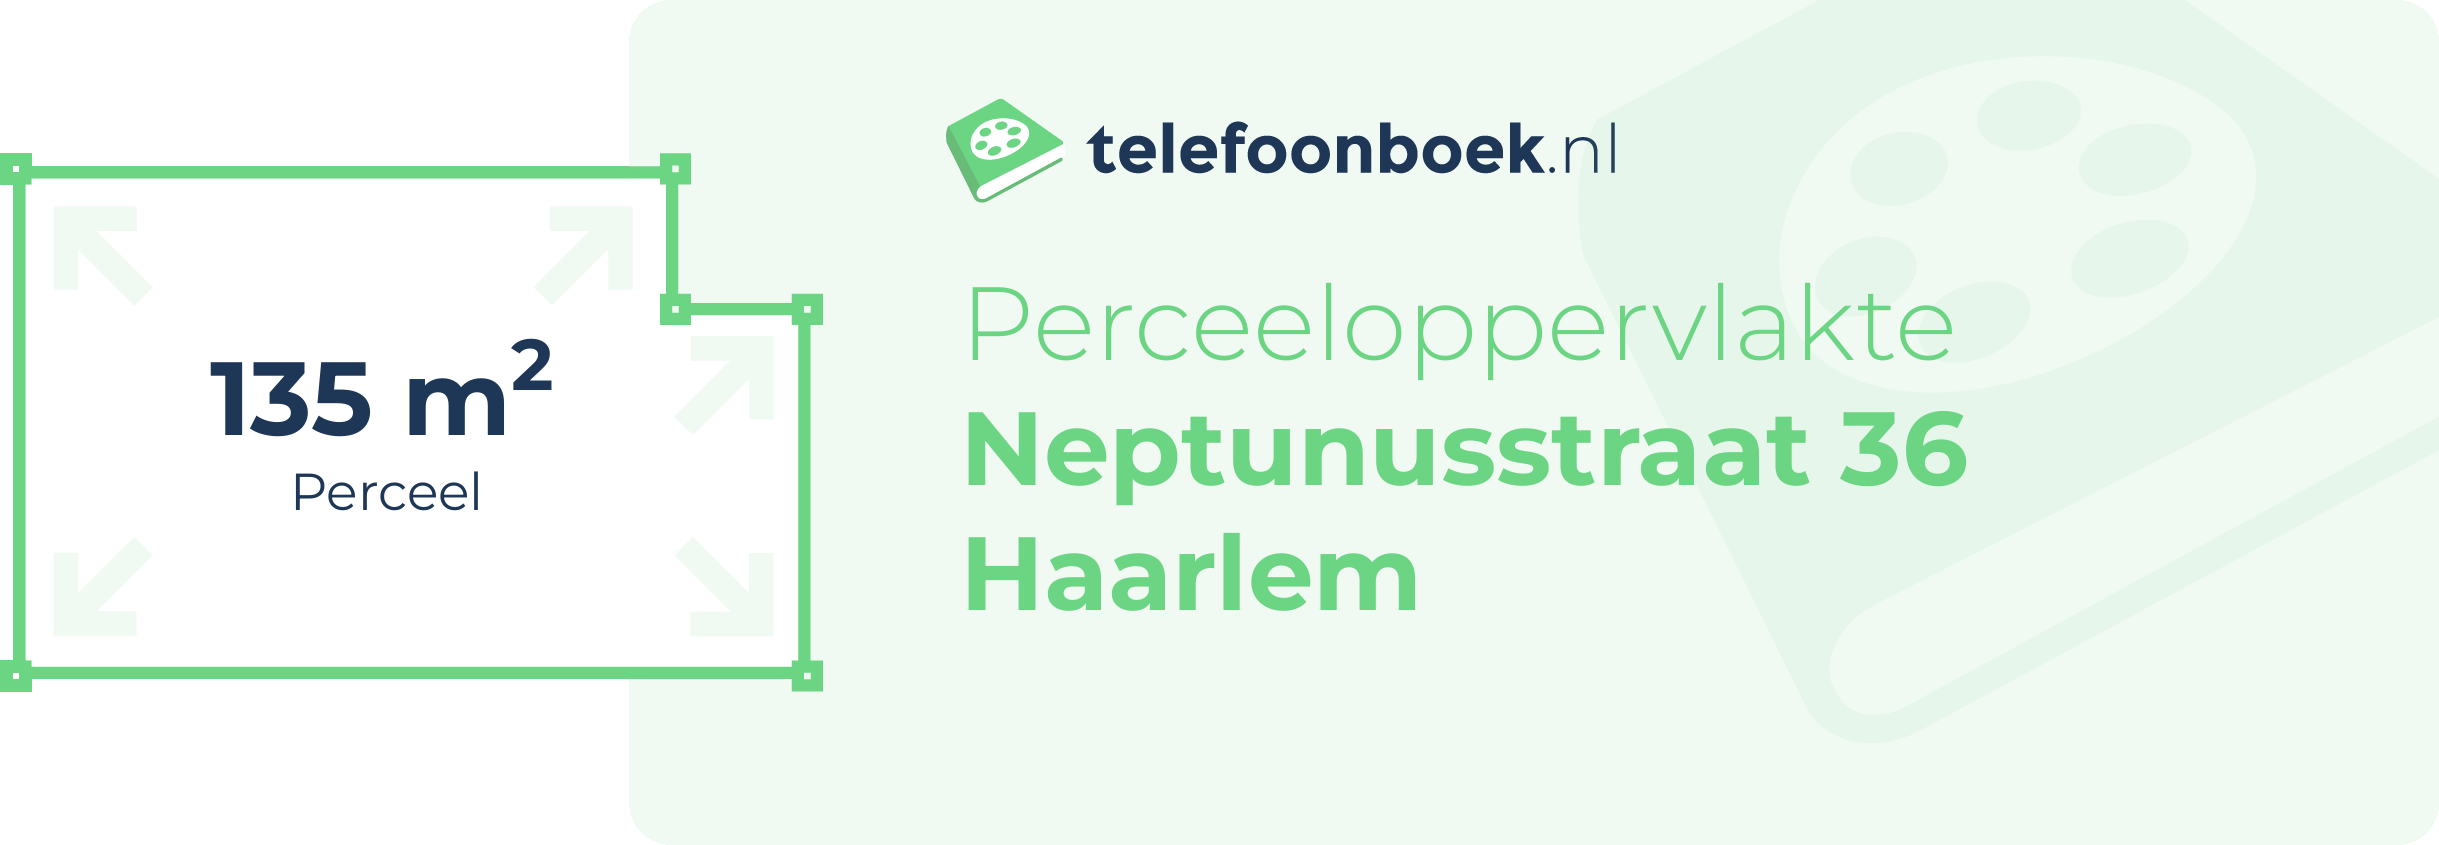 Perceeloppervlakte Neptunusstraat 36 Haarlem